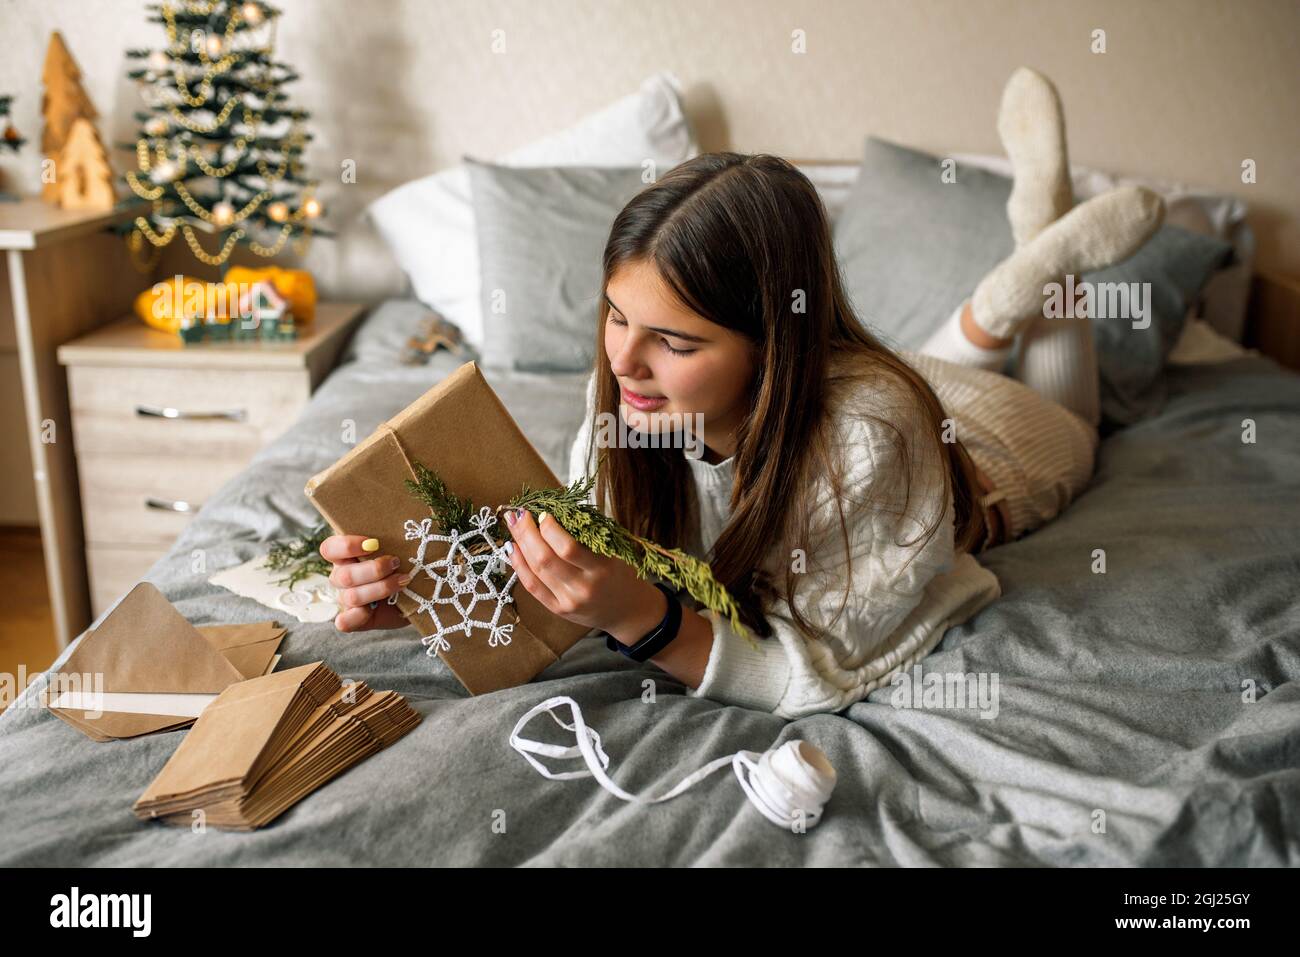 Mädchen Verpackung Geschenke mit Weihnachtsdekoration.Geschenk in einer Box, ein Brief in einem Handwerk Umschlag. Stockfoto